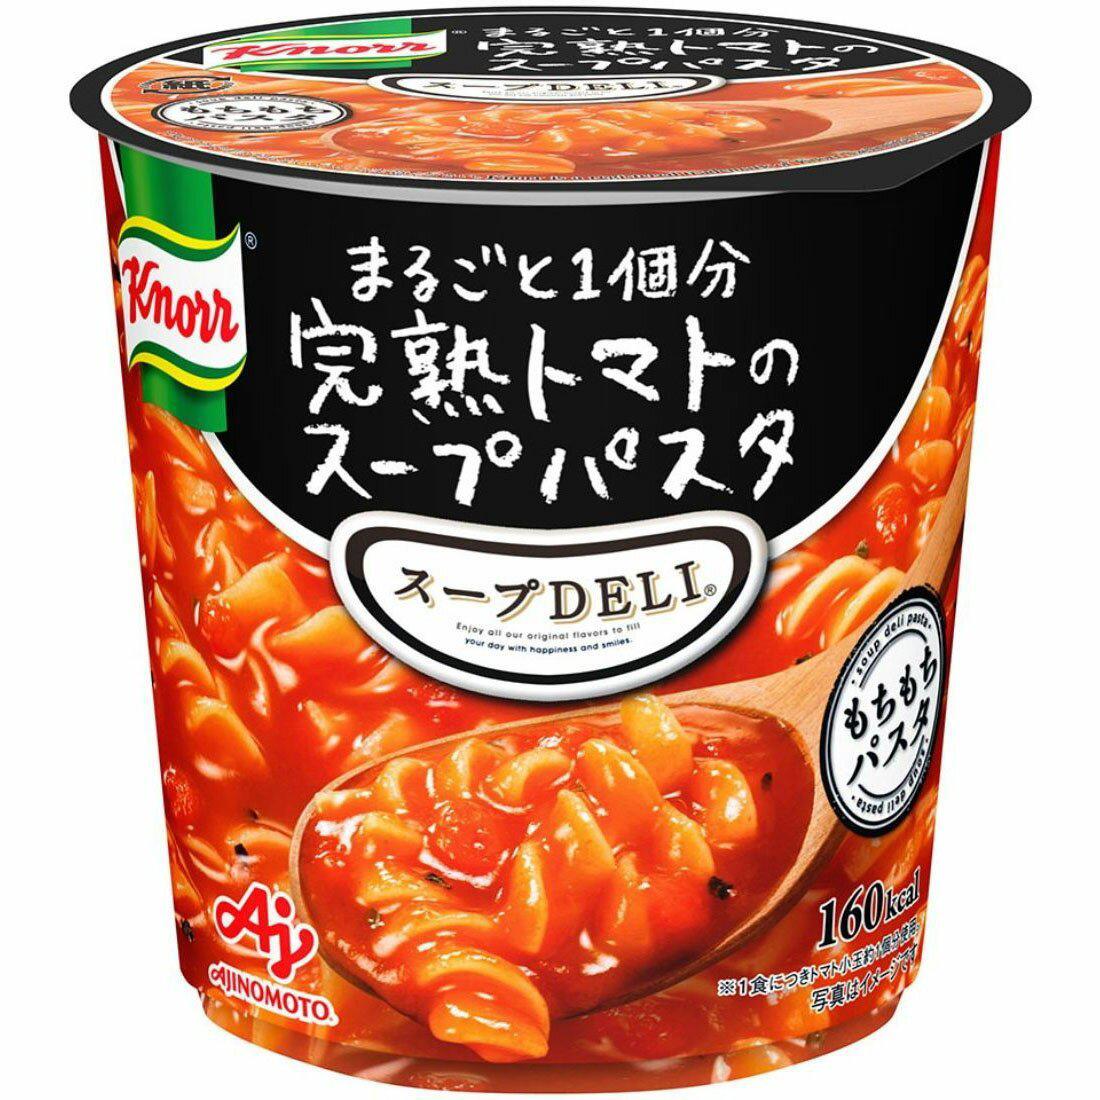 Ajinomoto Knorr Soup Deli Tomato Soup Pasta 41.6g - YOYO JAPAN